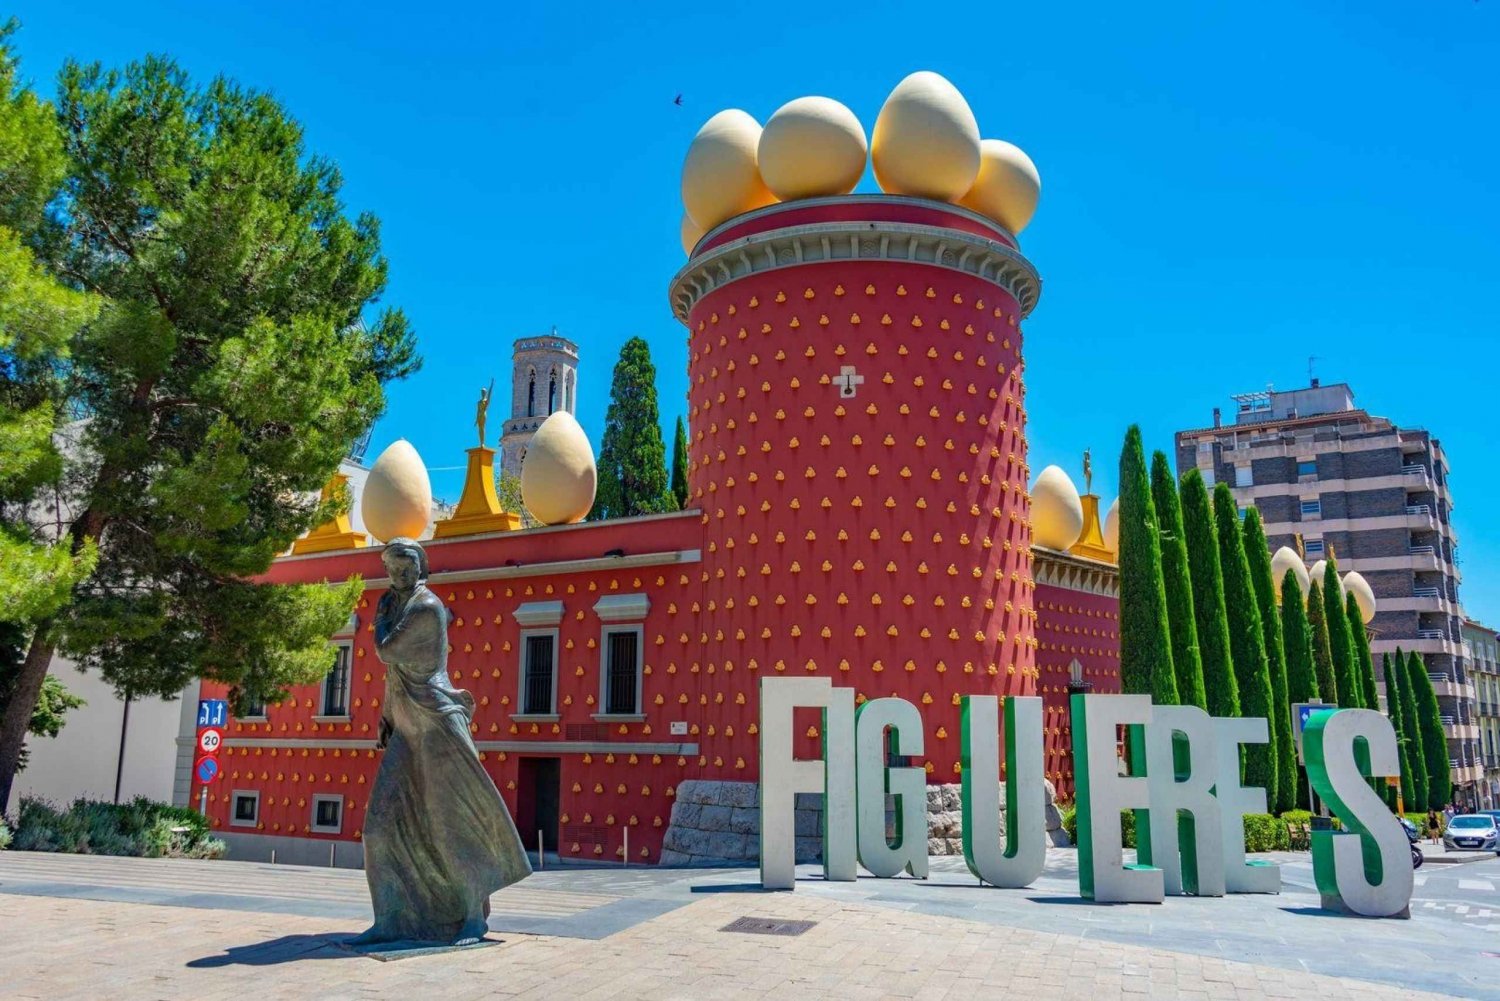 Figueres: Teatro Dali - ingresso para o museu e guia de áudio